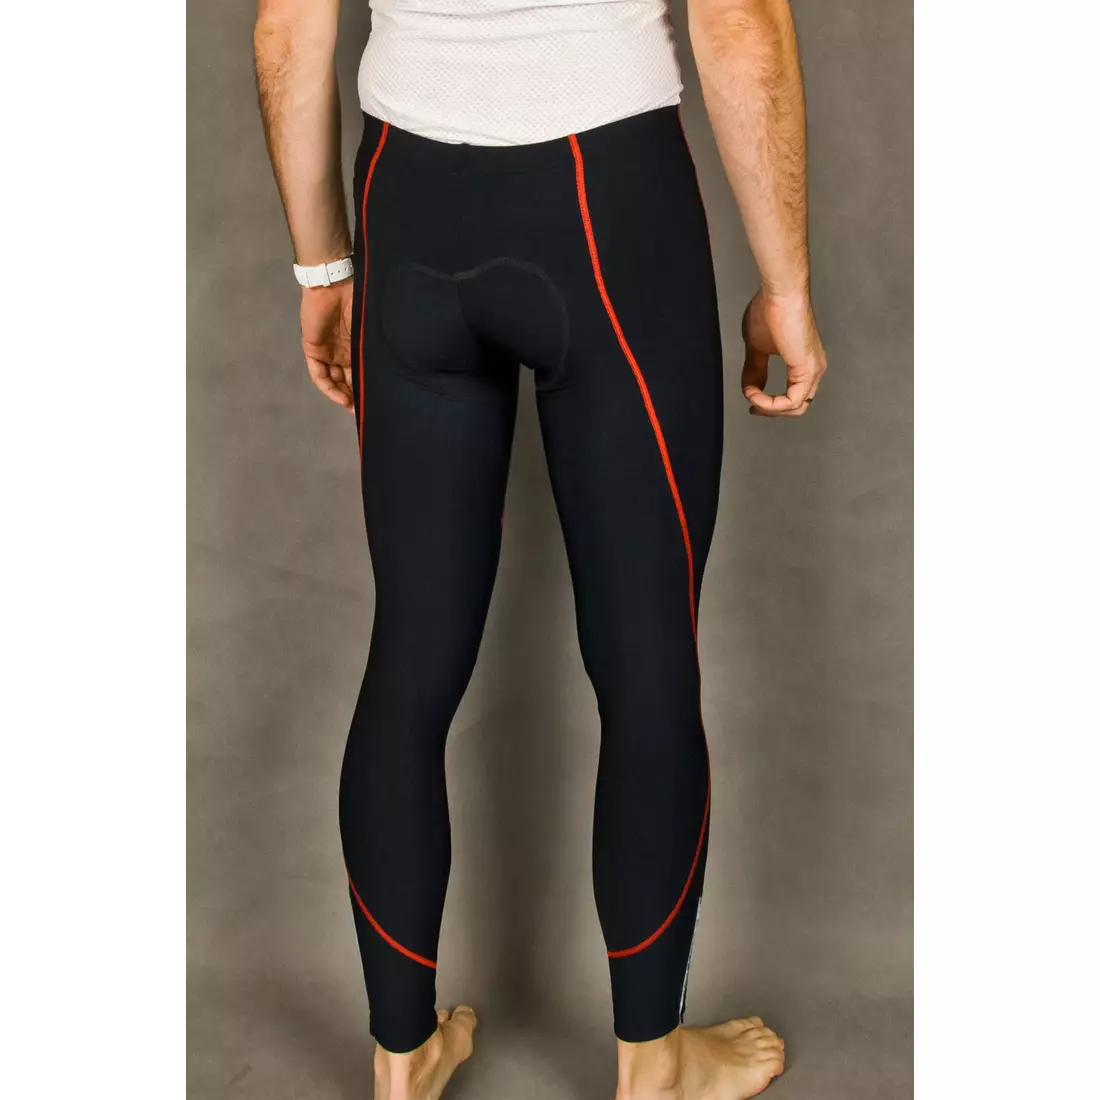 Pantaloni izolați pentru ciclism MikeSPORT GEXO cu inserție COMP HP fără bretele, cusături negre și roșii